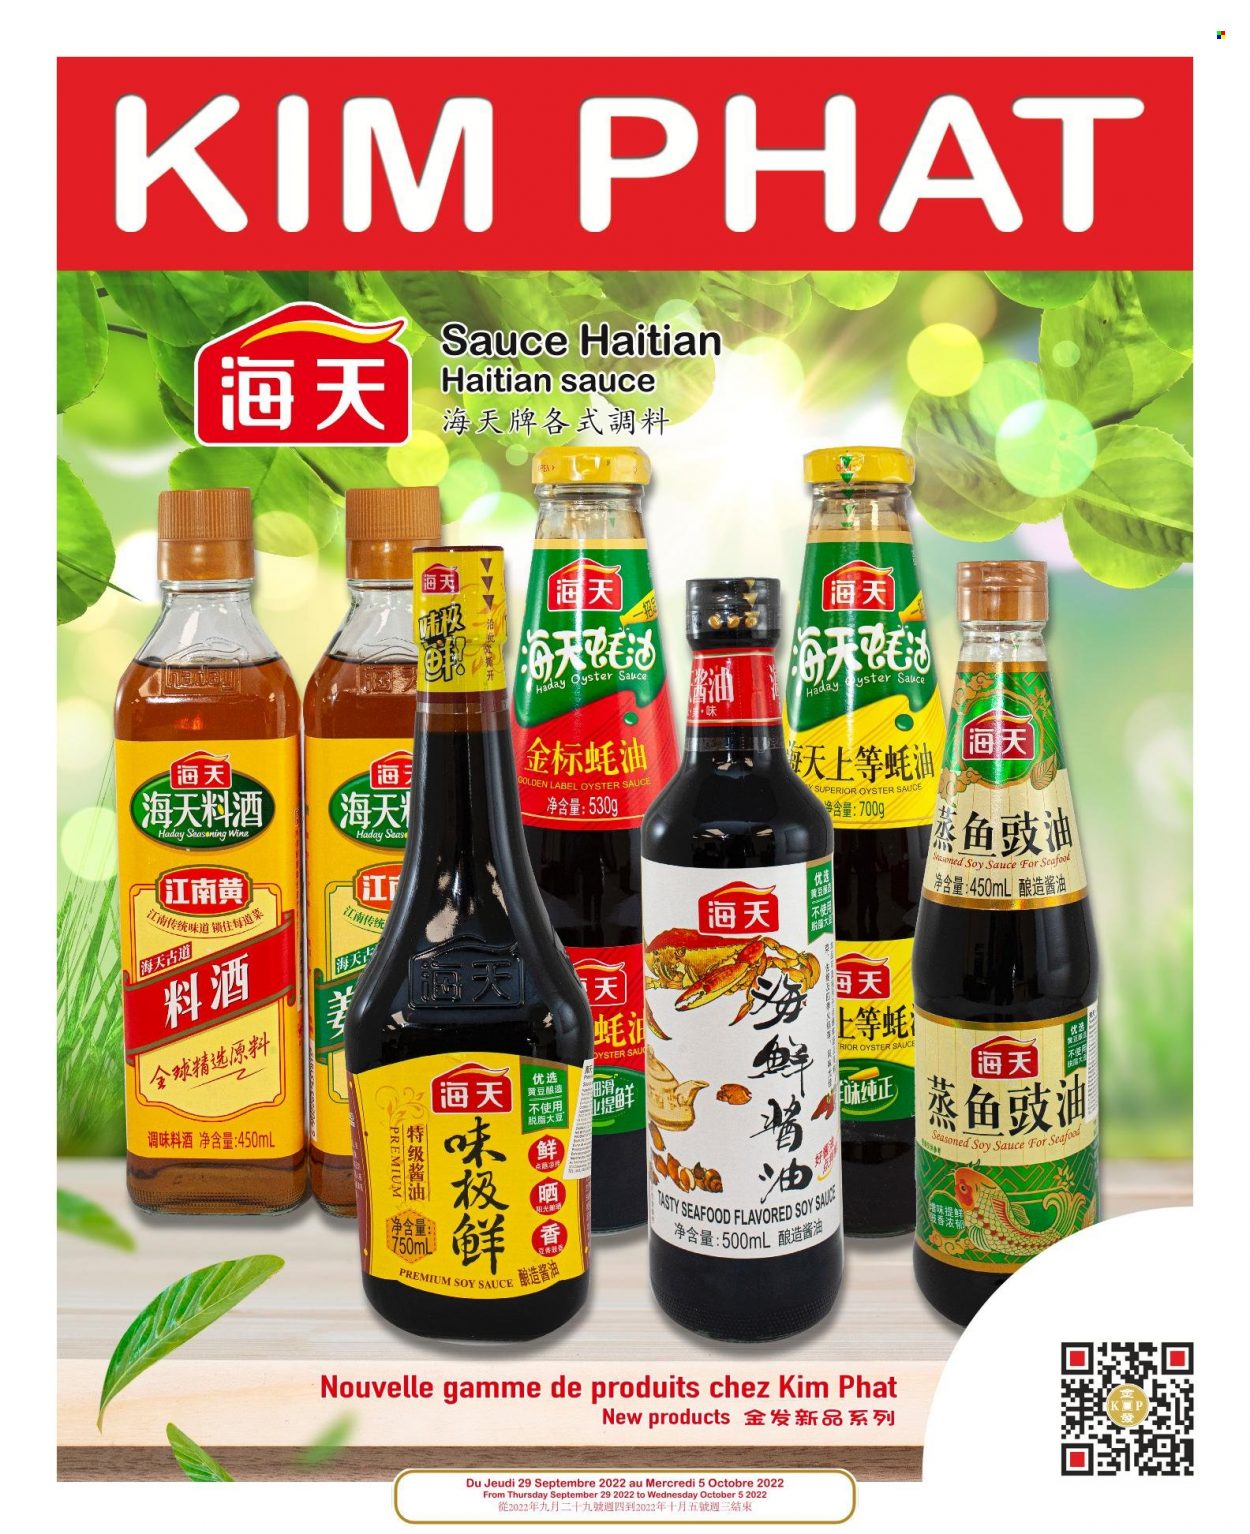 Kim Phat flyer  - September 29, 2022 - October 05, 2022.